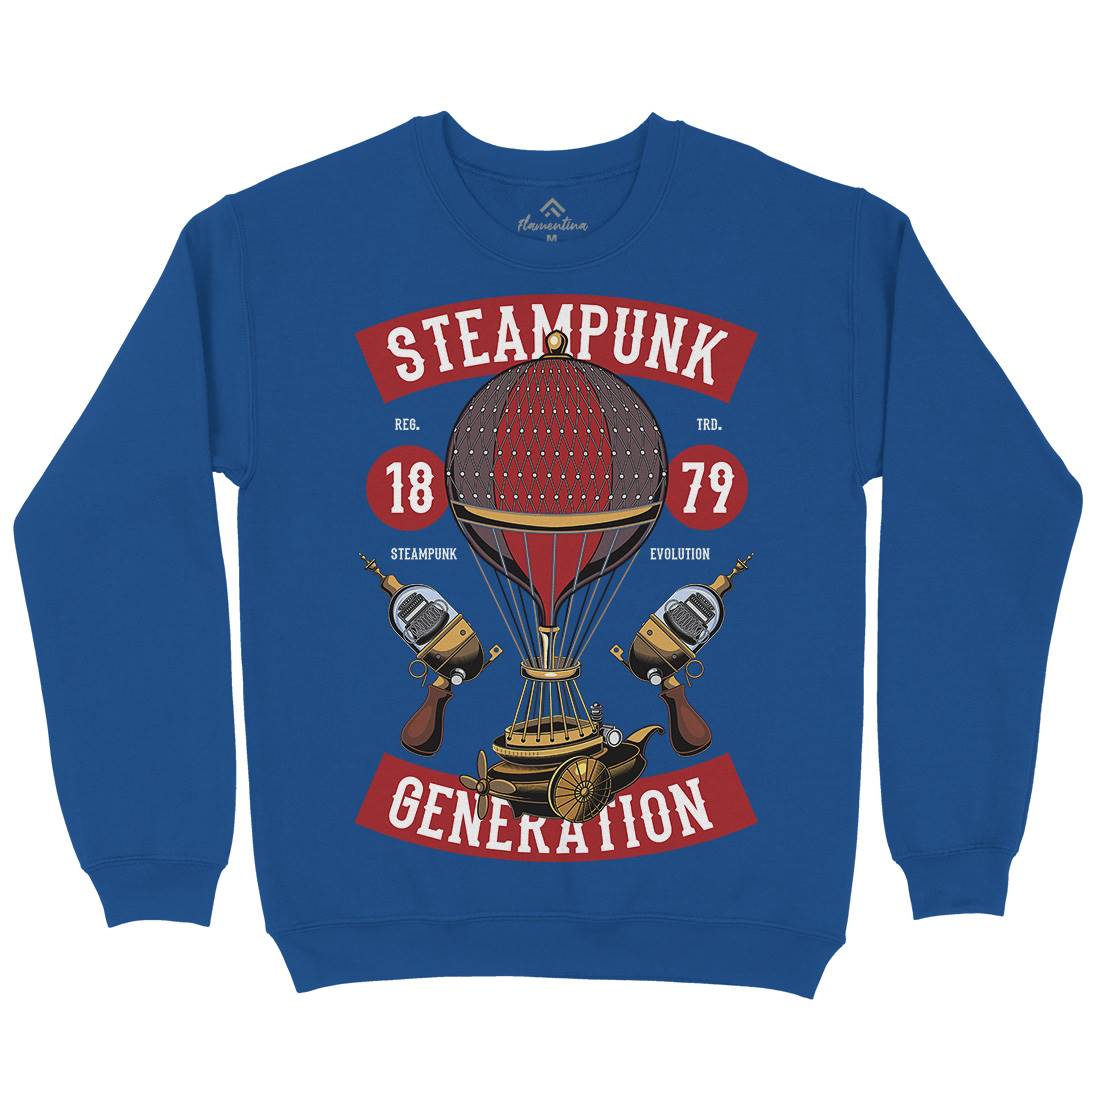 Generation Kids Crew Neck Sweatshirt Steampunk C449